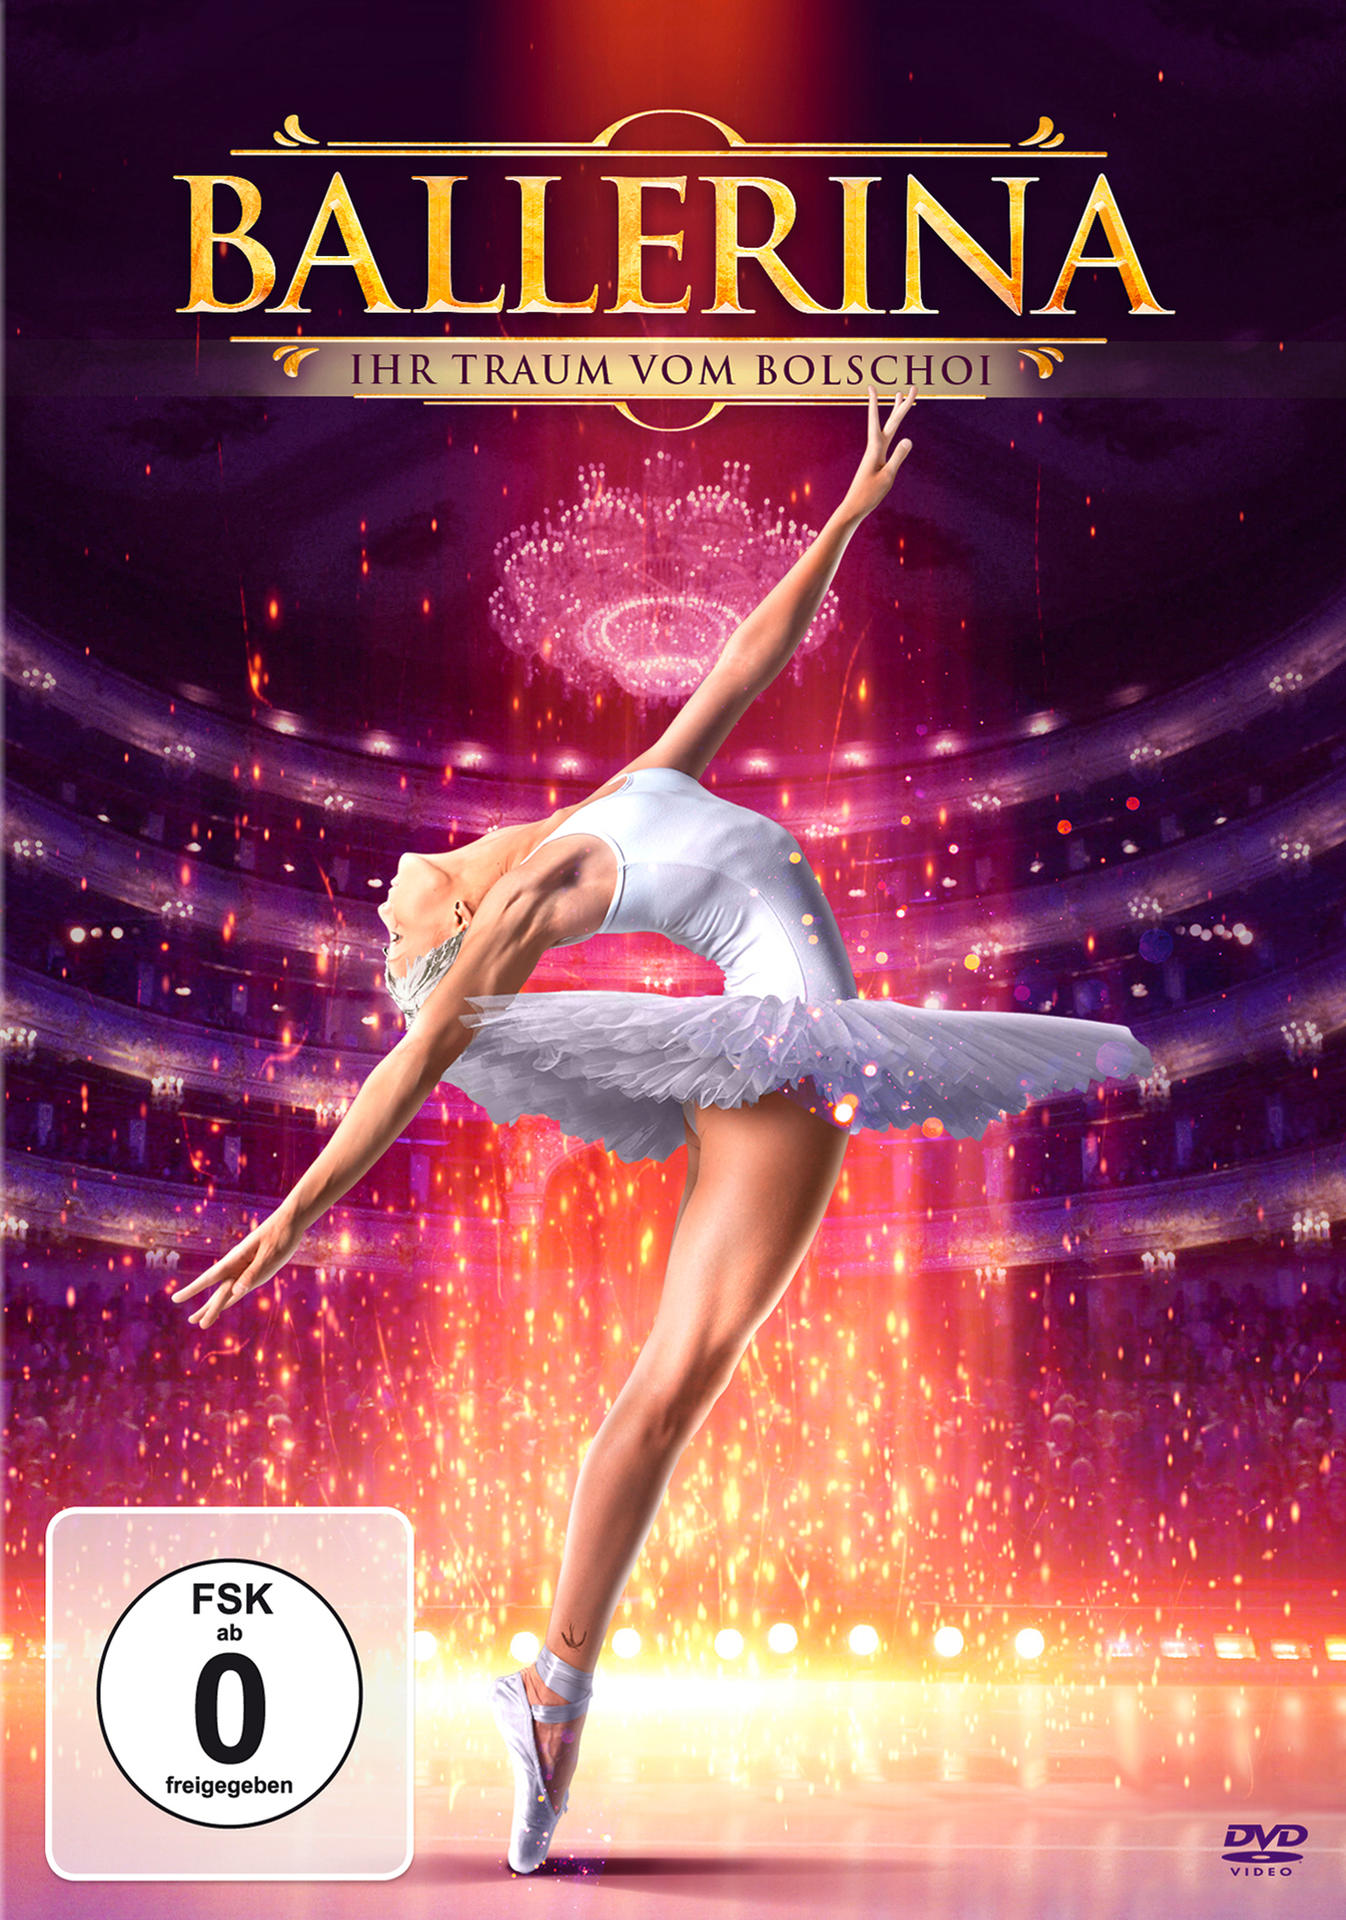 - Ballerina vom DVD Ihr Traum Bolshoi